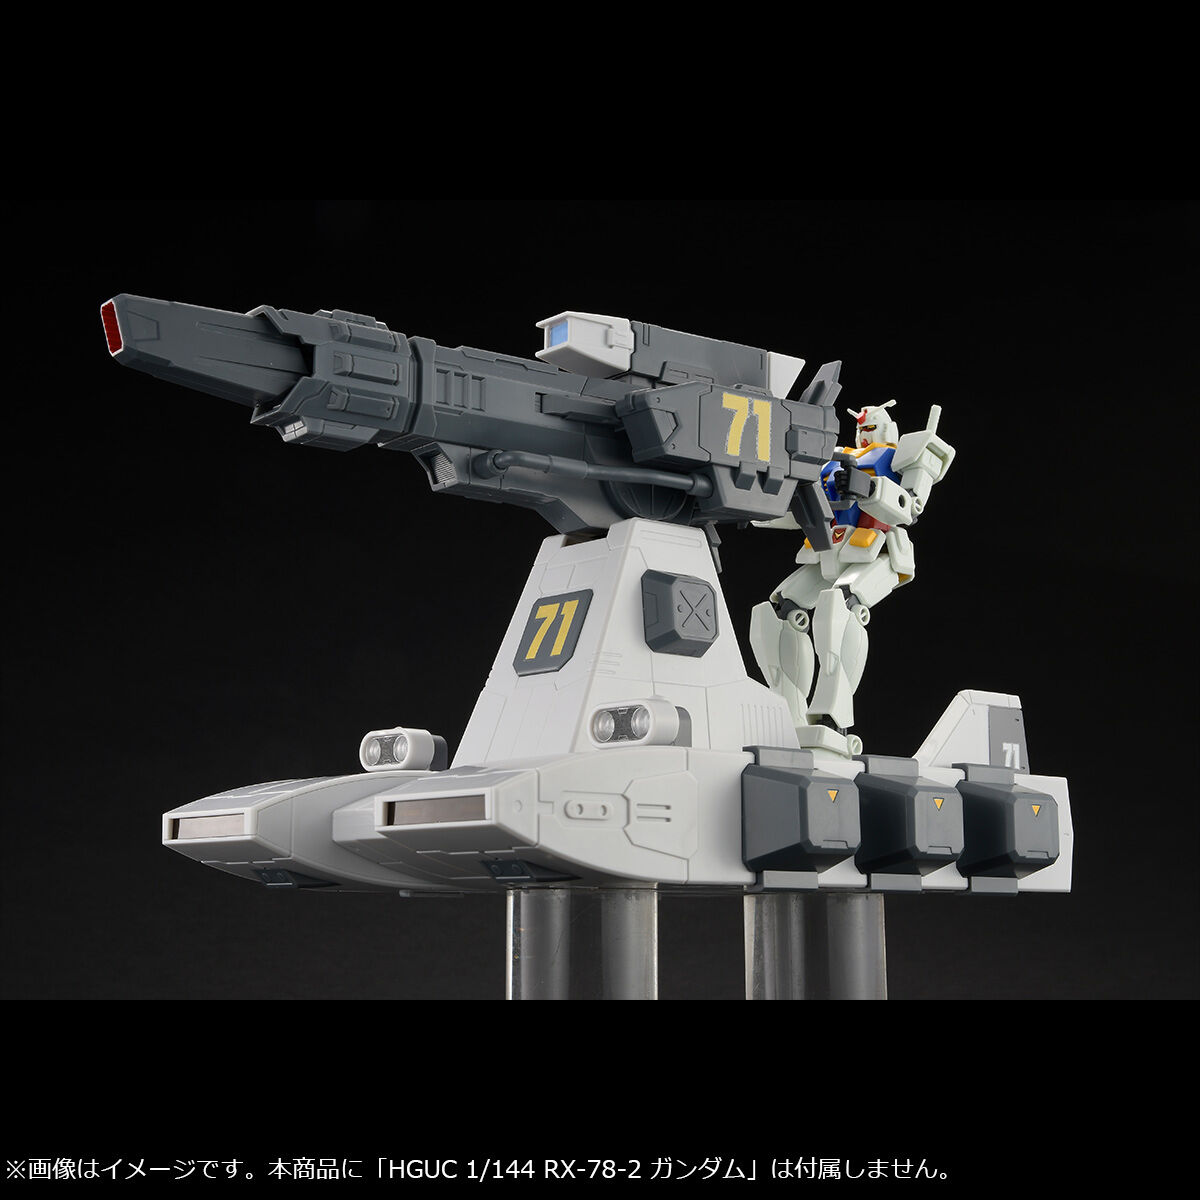 Megahobby Mechine Build 1/144 Burst Liner for Mobile Suit Gundam series